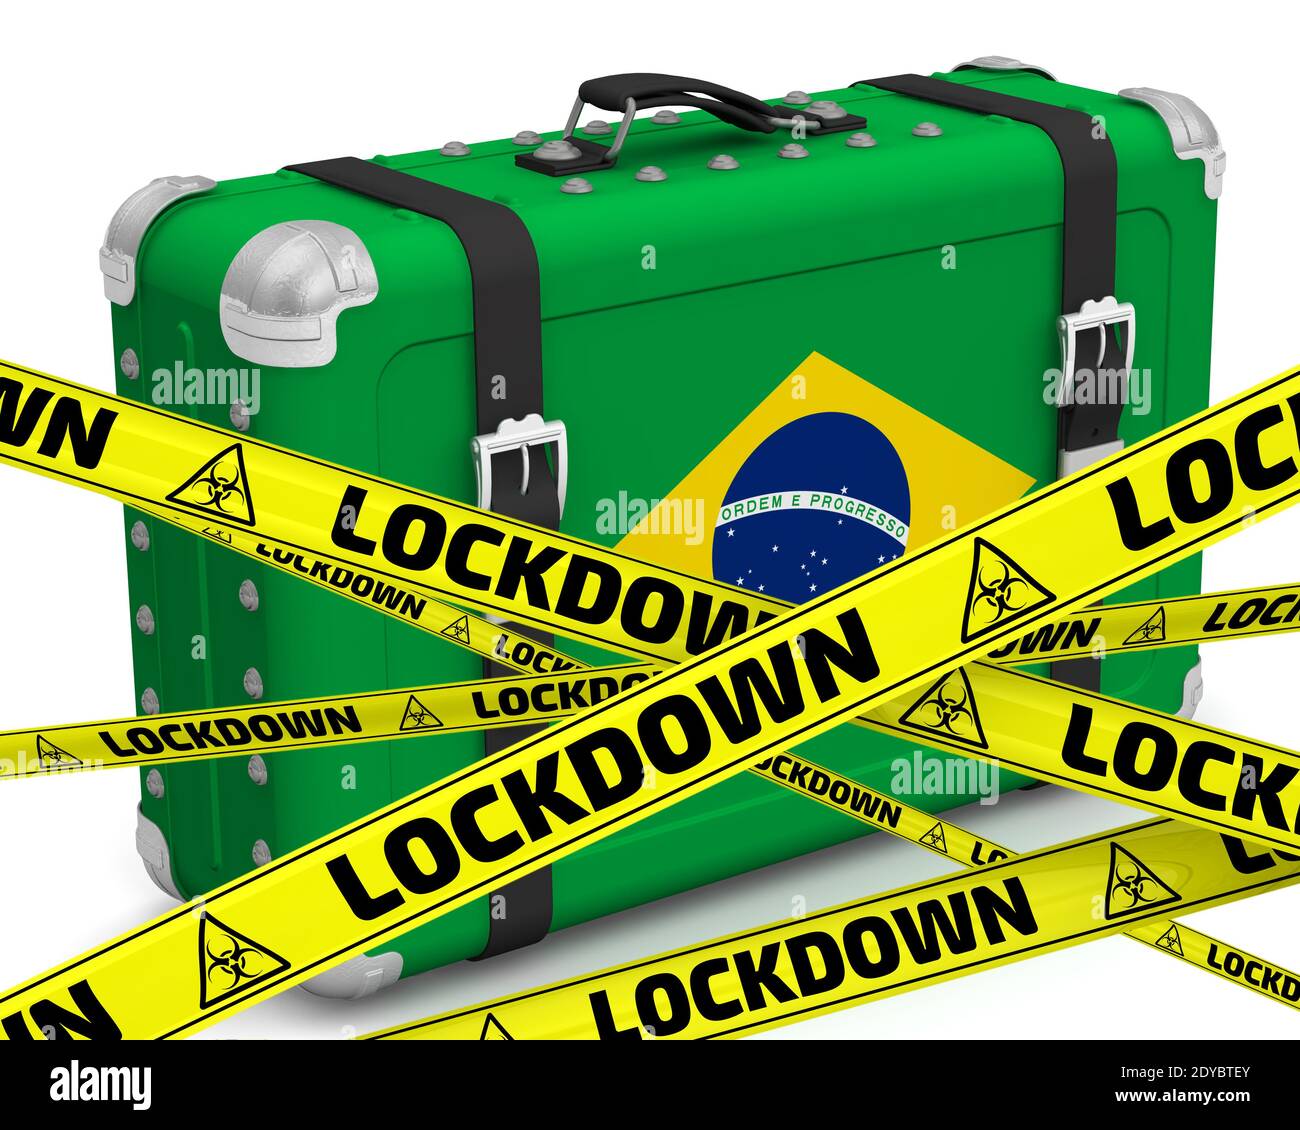 Le Brésil est en confinement. Valise rétro avec le drapeau du Brésil se dresse sur une surface blanche avec des bandes d'avertissement jaunes qui disent VERROUILLAGE. Illustration 3D Banque D'Images